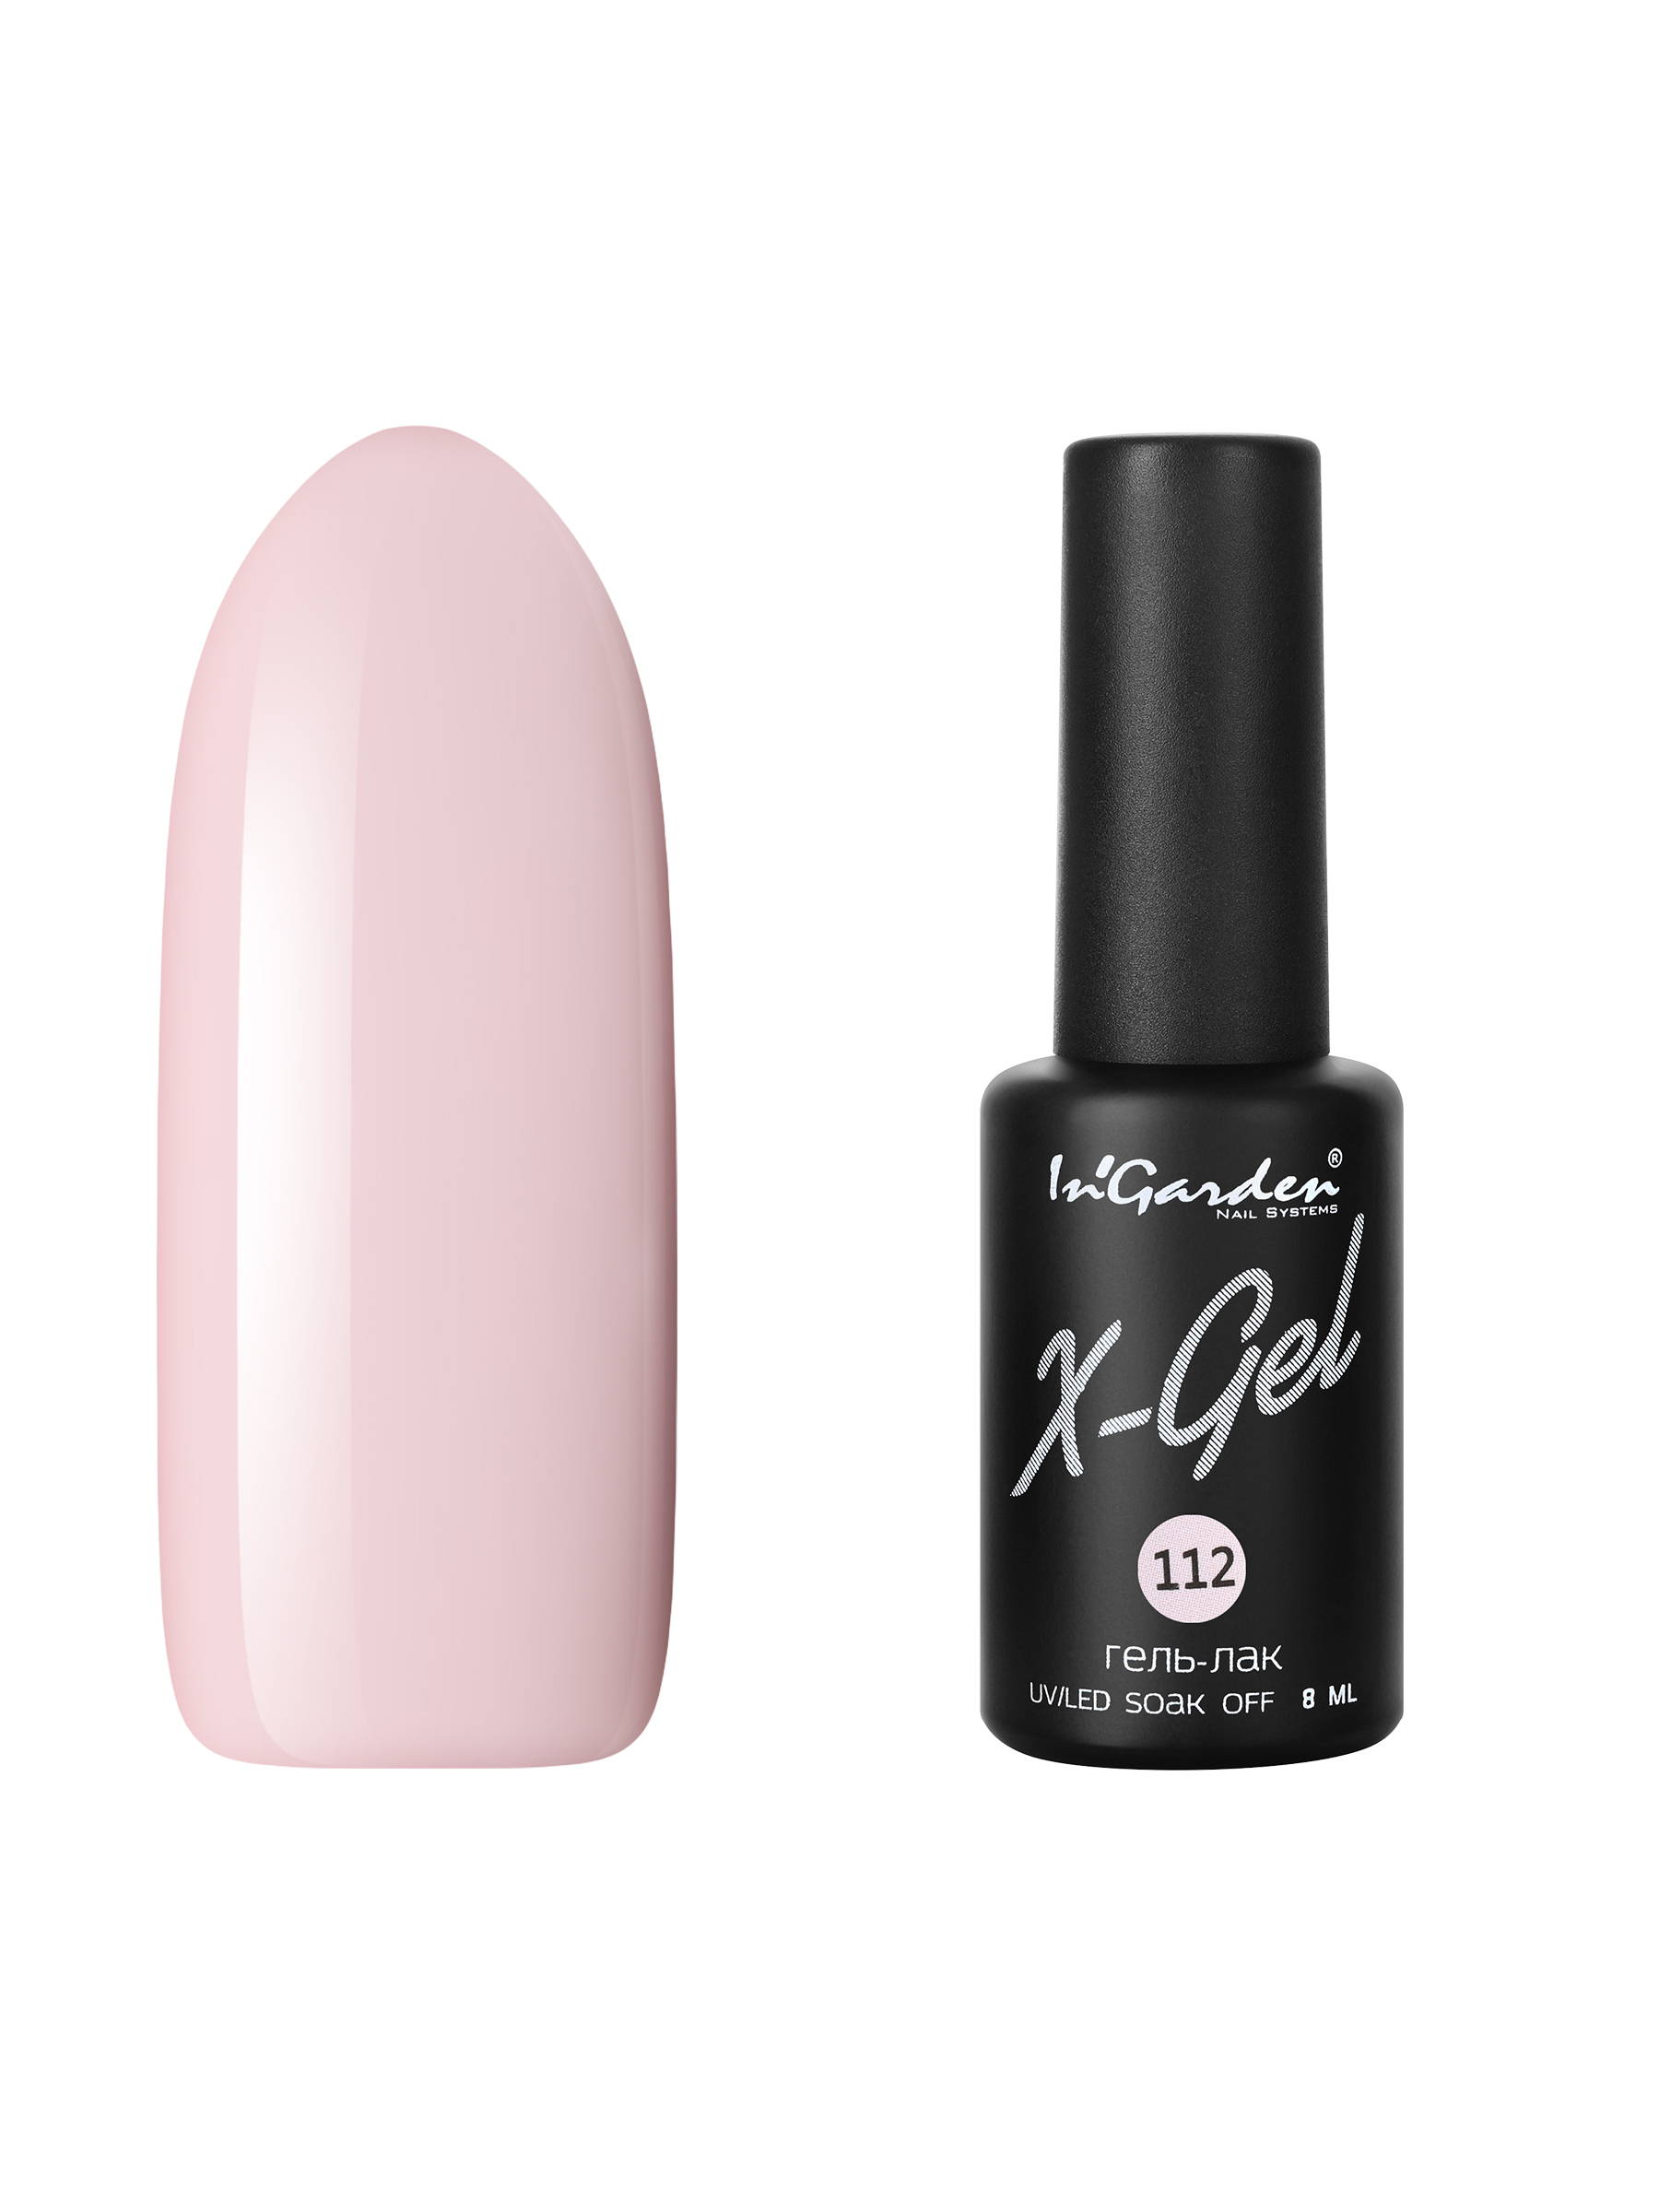 Купить Гель лак для ногтей In’Garden X-Gel N° 112 молочно-розовый плотный 8 мл, In'Garden